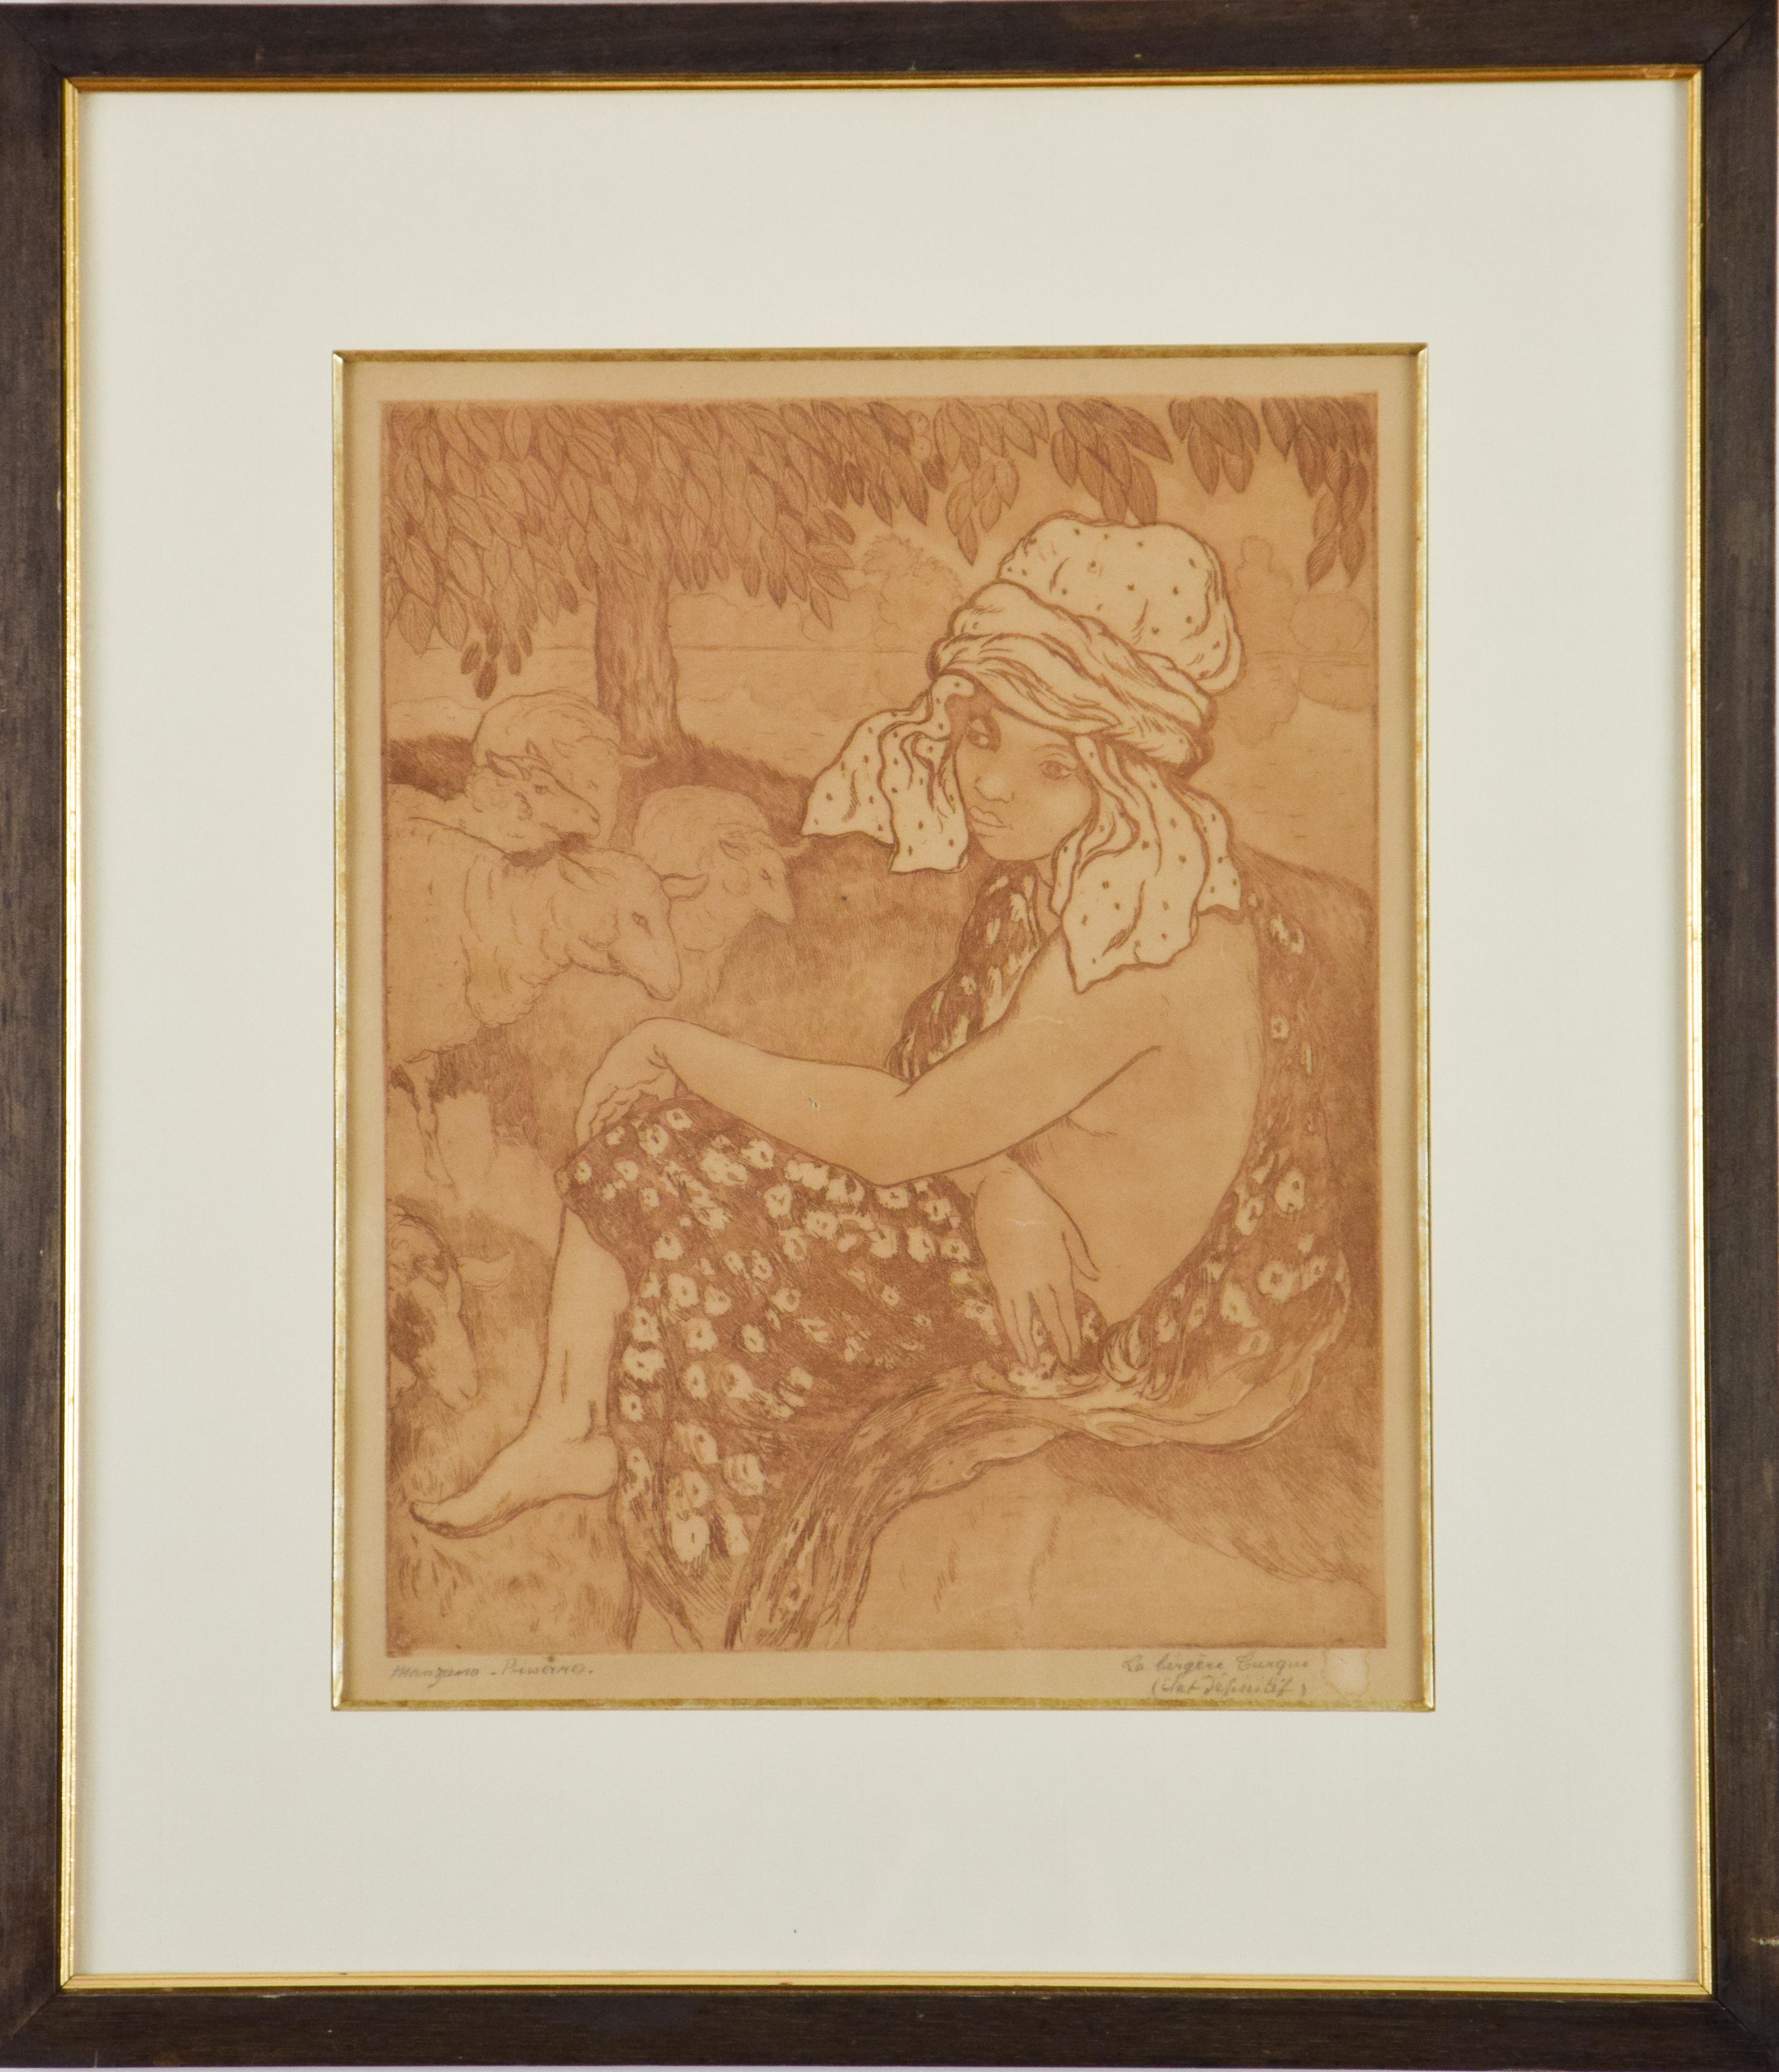 Impression de Georges Manzana Pissarro « La Bergre Turque » (La bergere turque) - Print de Georges Henri Manzana Pissarro